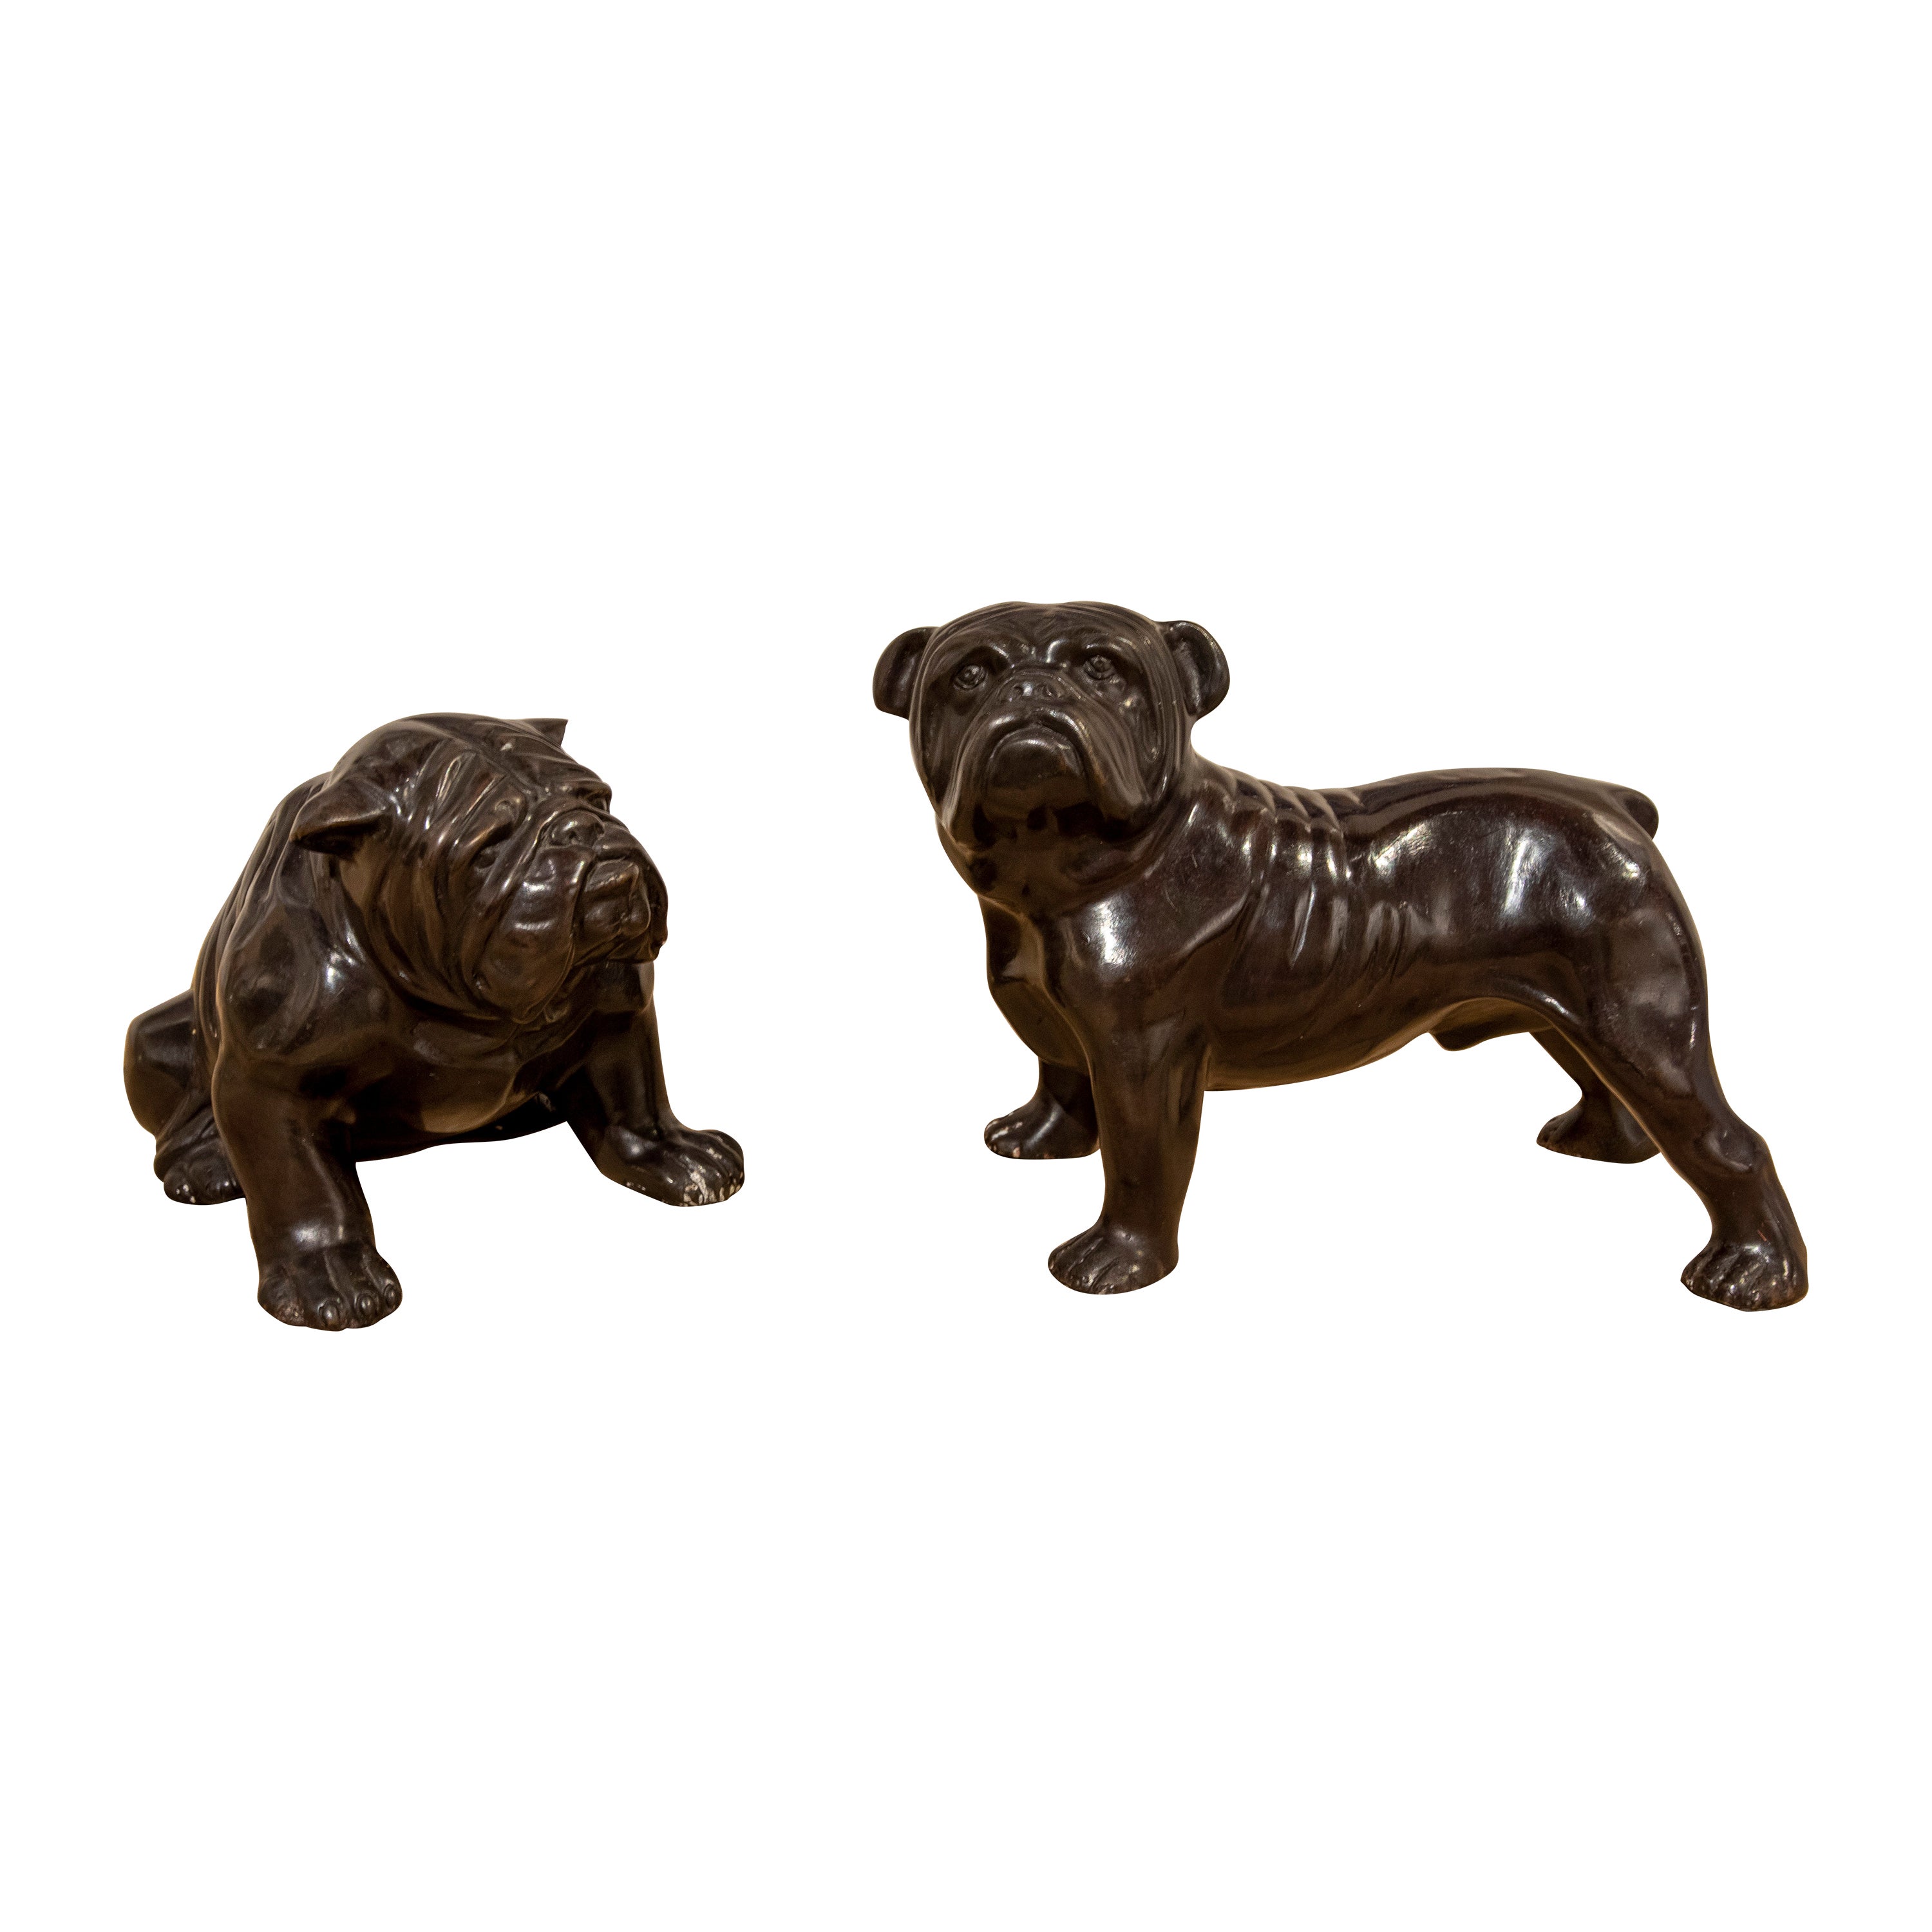 1980s Pair of Bronze Sculptures of Dogs